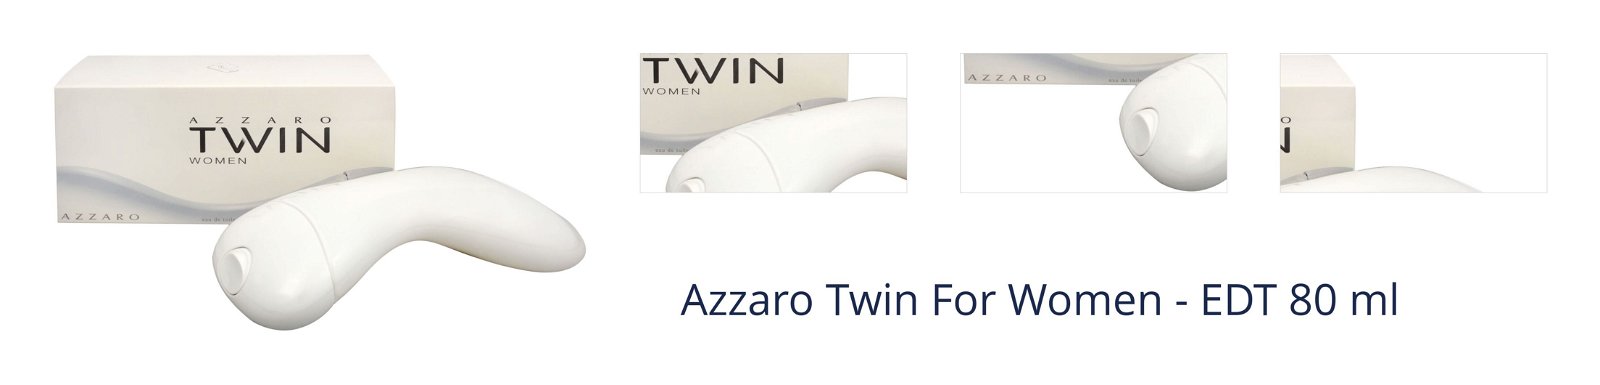 Azzaro Twin For Women - EDT 80 ml 1